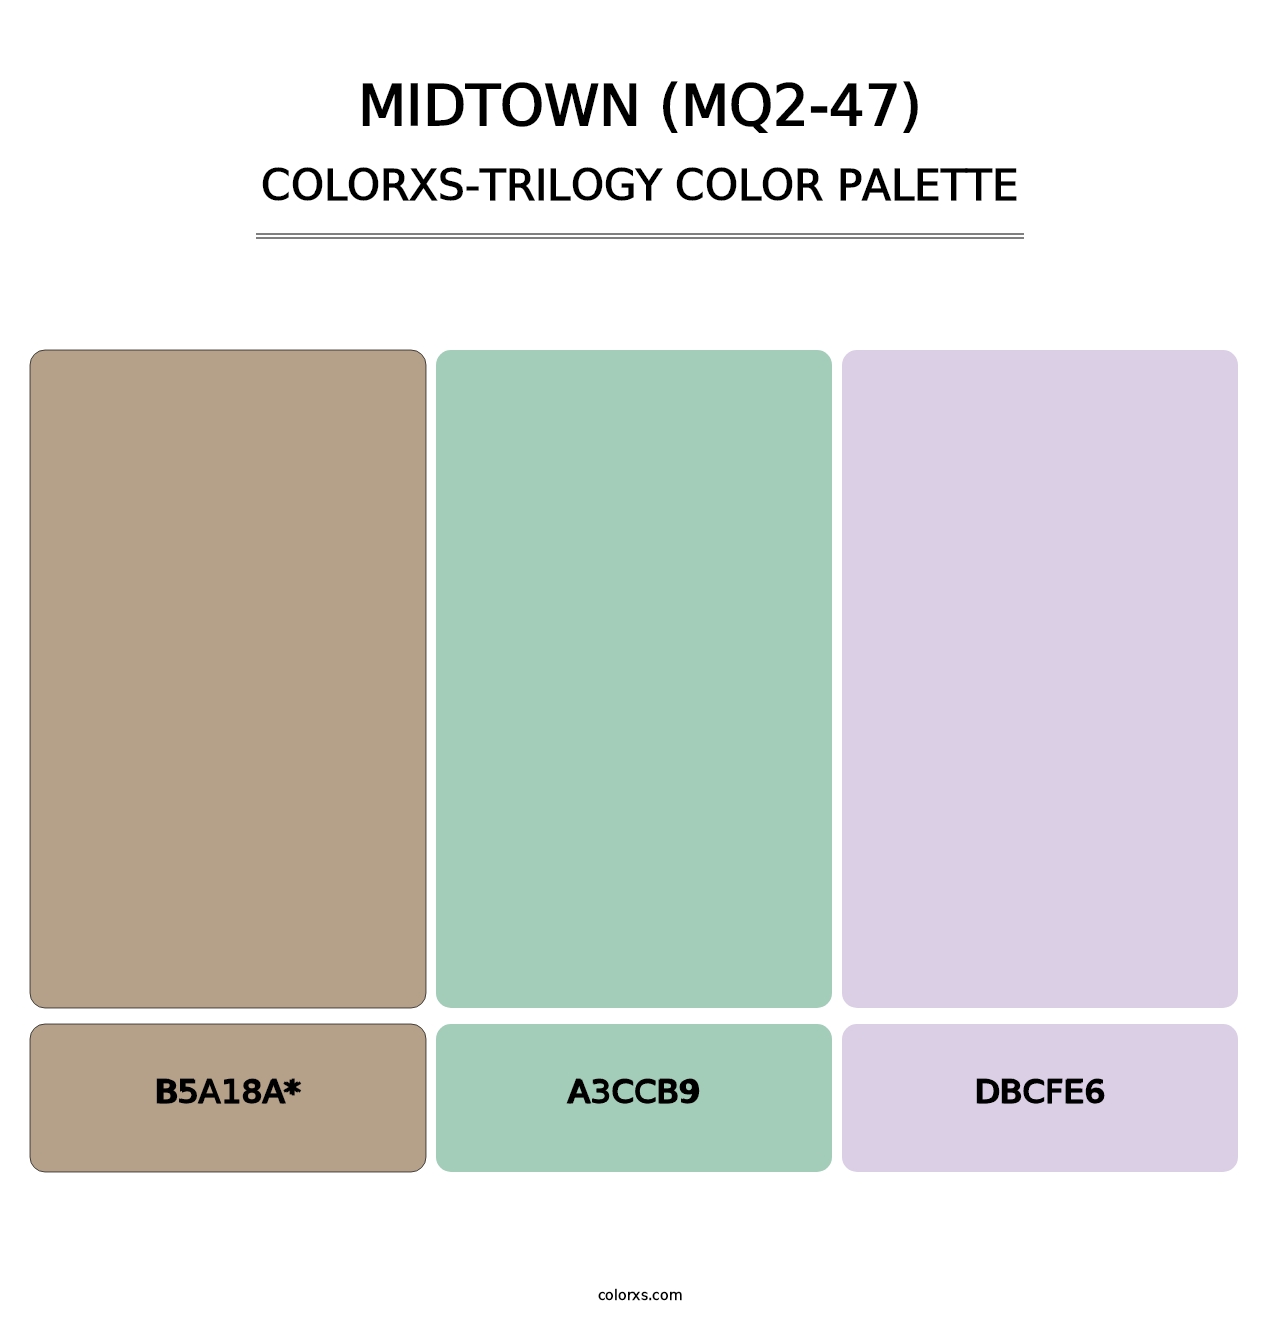 Midtown (MQ2-47) - Colorxs Trilogy Palette